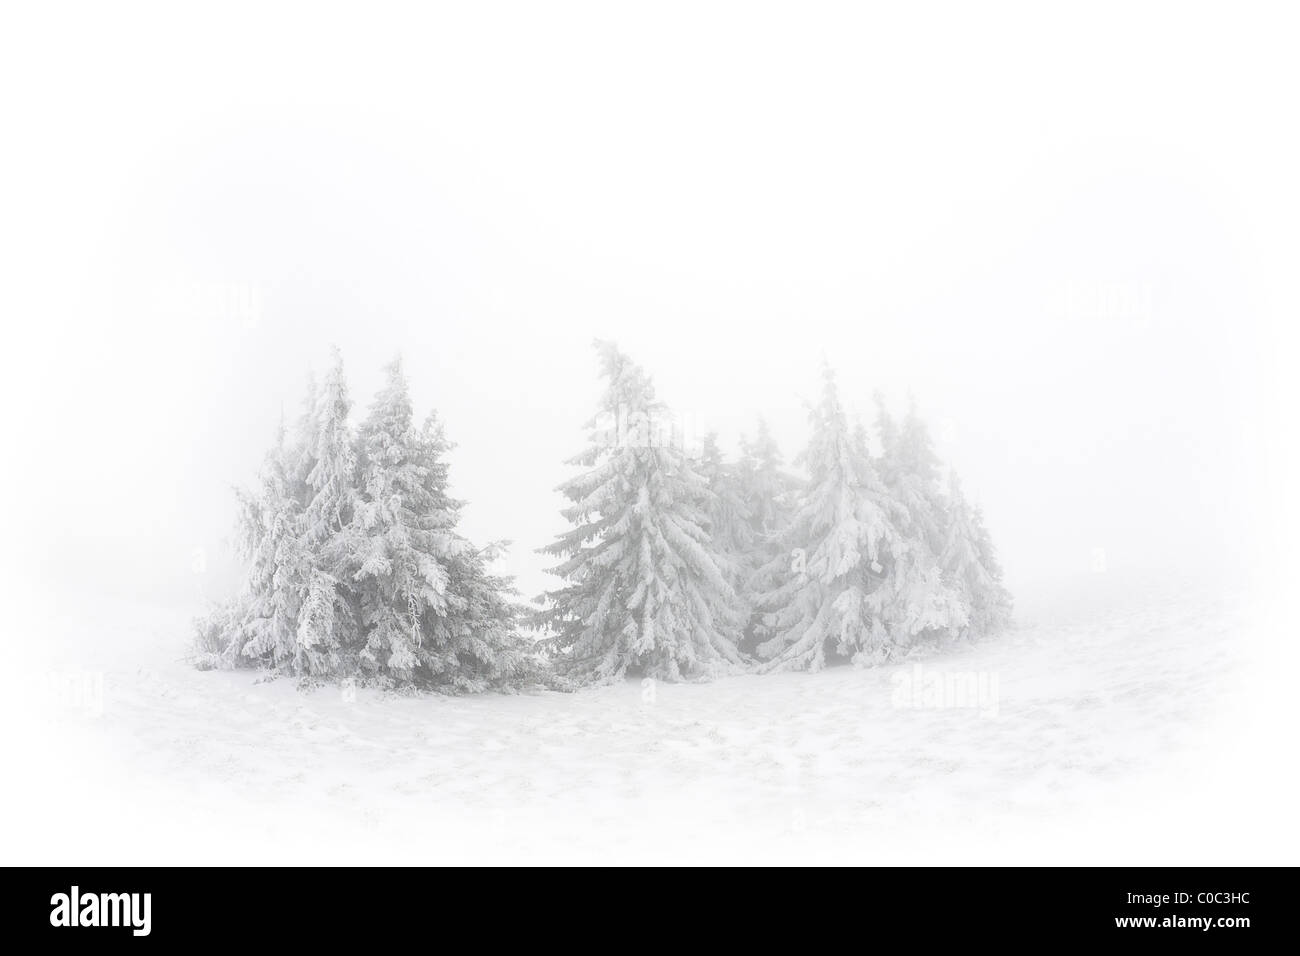 Un bosquet d'épinettes de Norvège (Picea abies) neige-couvertes (France). Groupe d'épicéas communs (Picea abies) de neige sewn. Banque D'Images